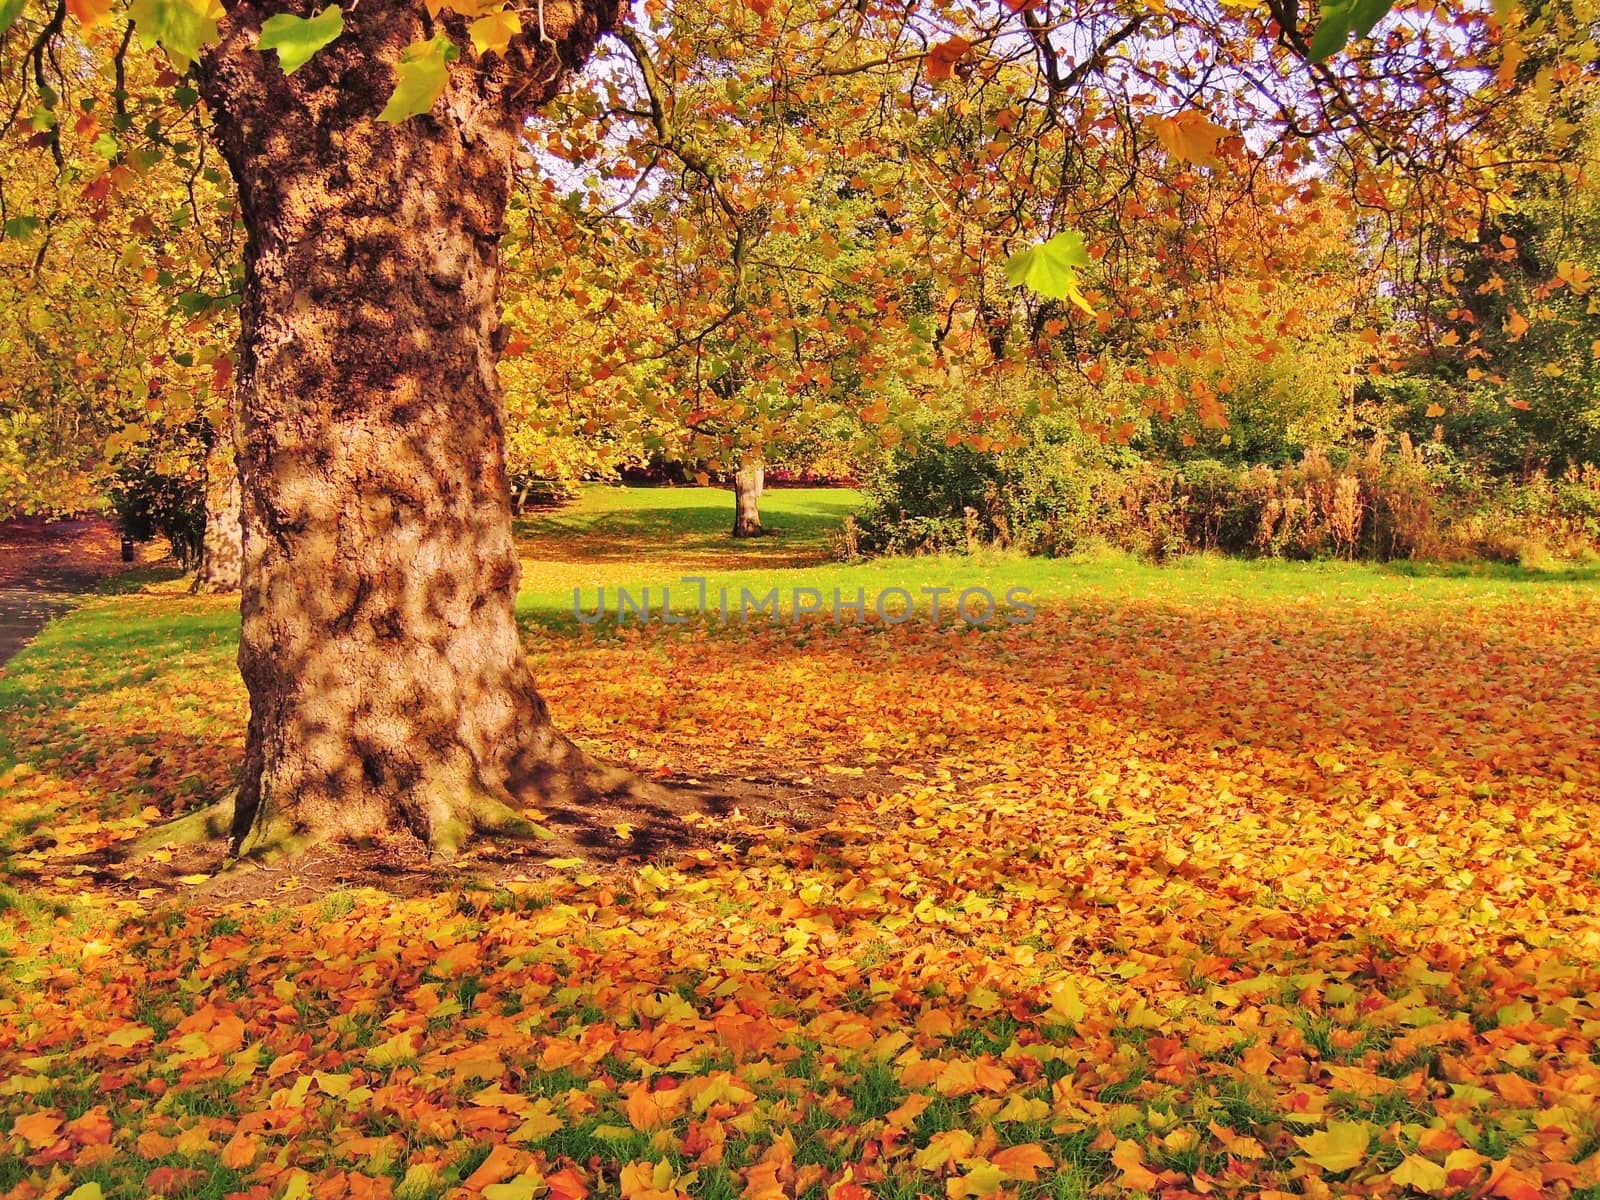 A colourful Autumn scene.